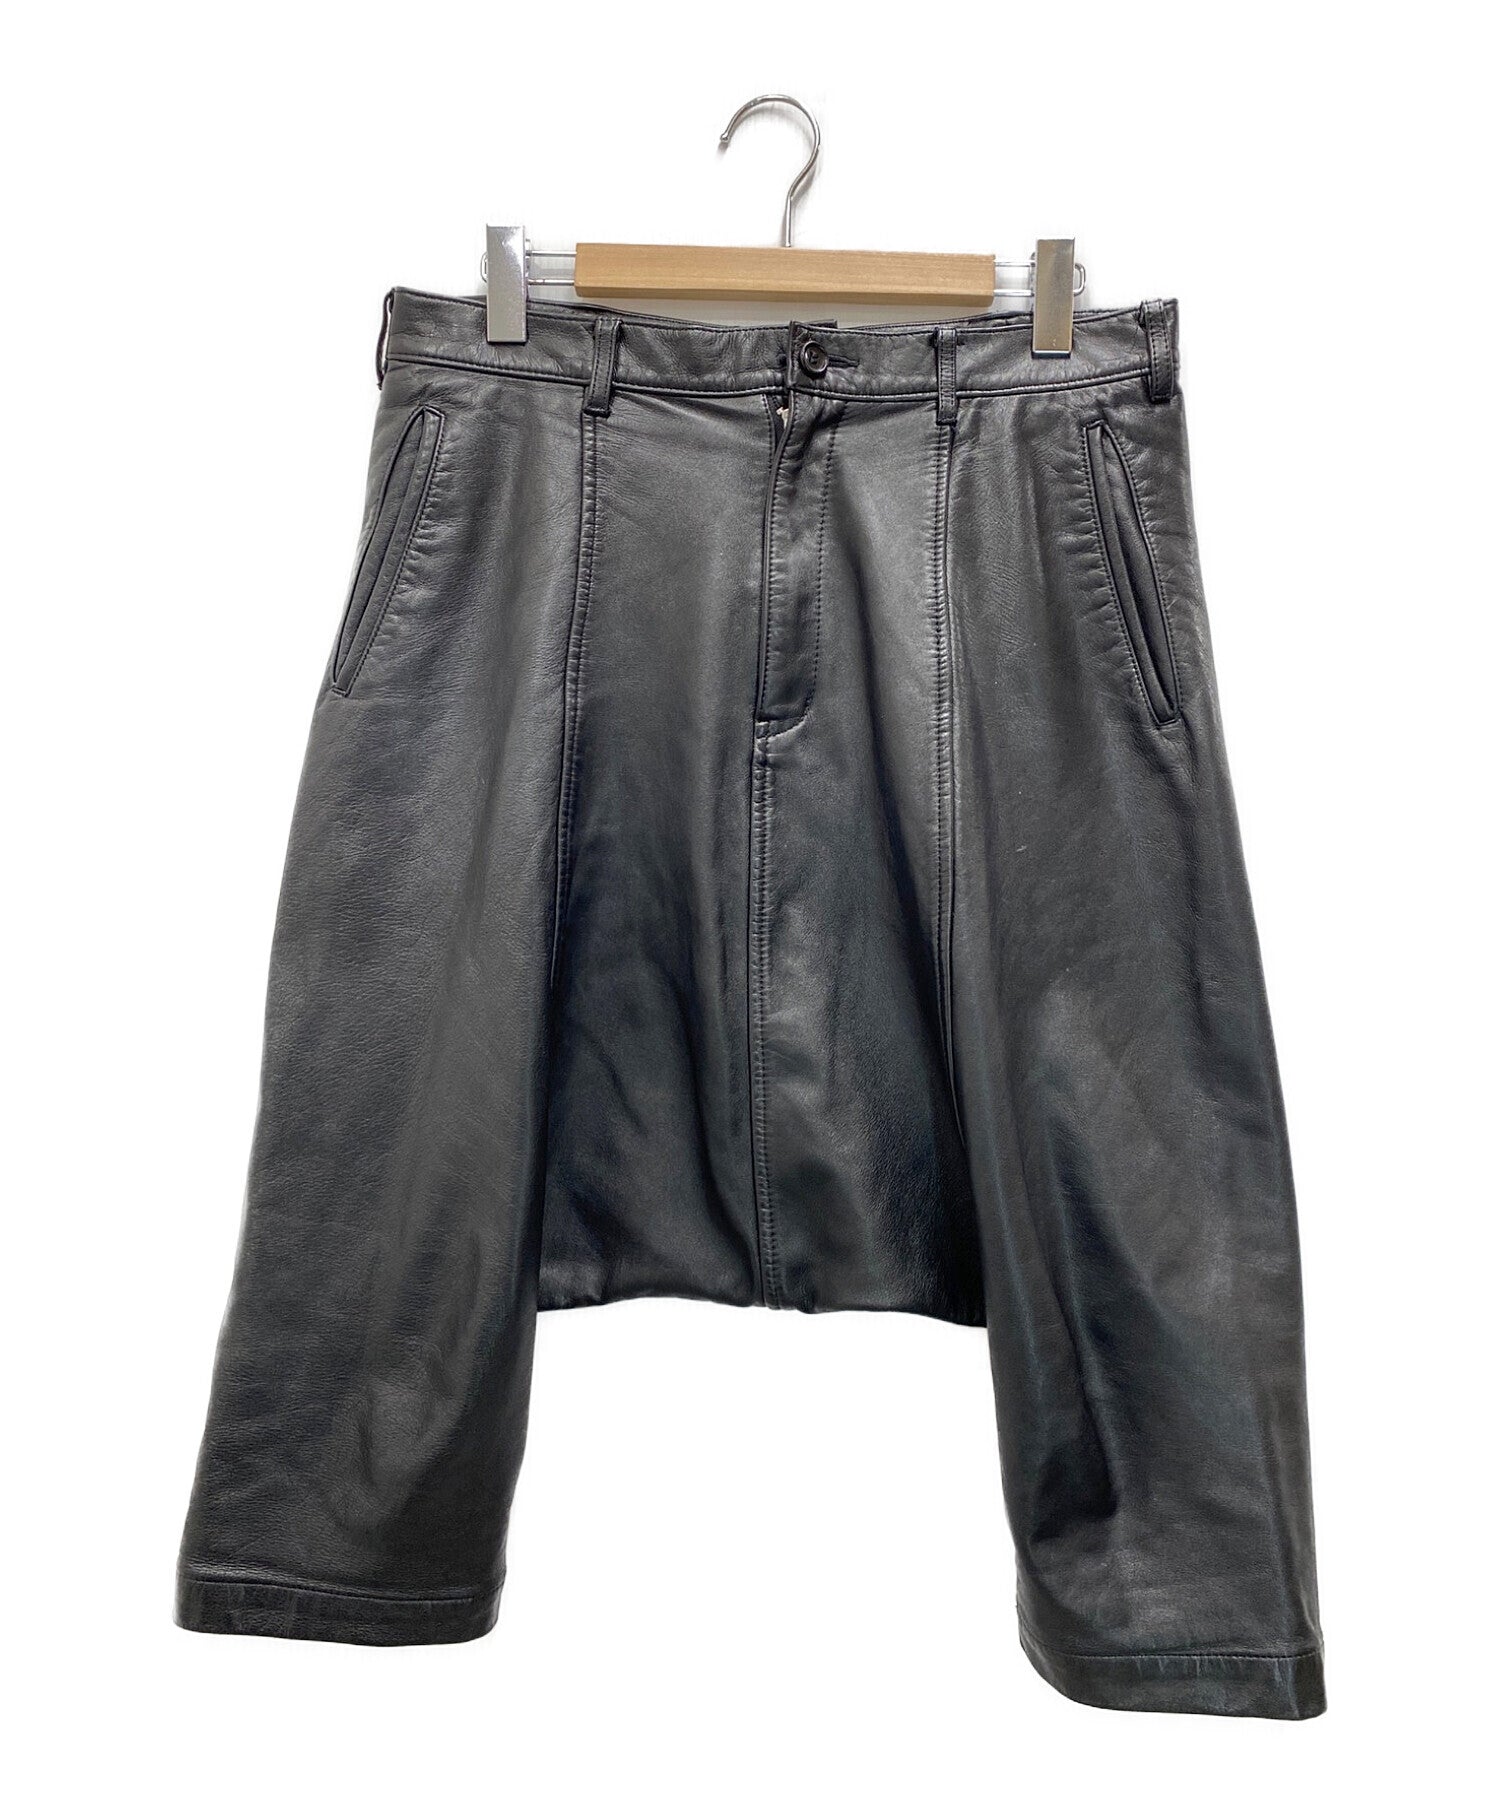 COMME des GARCONS HOMME PLUS Leather sarouel pants PL-P062